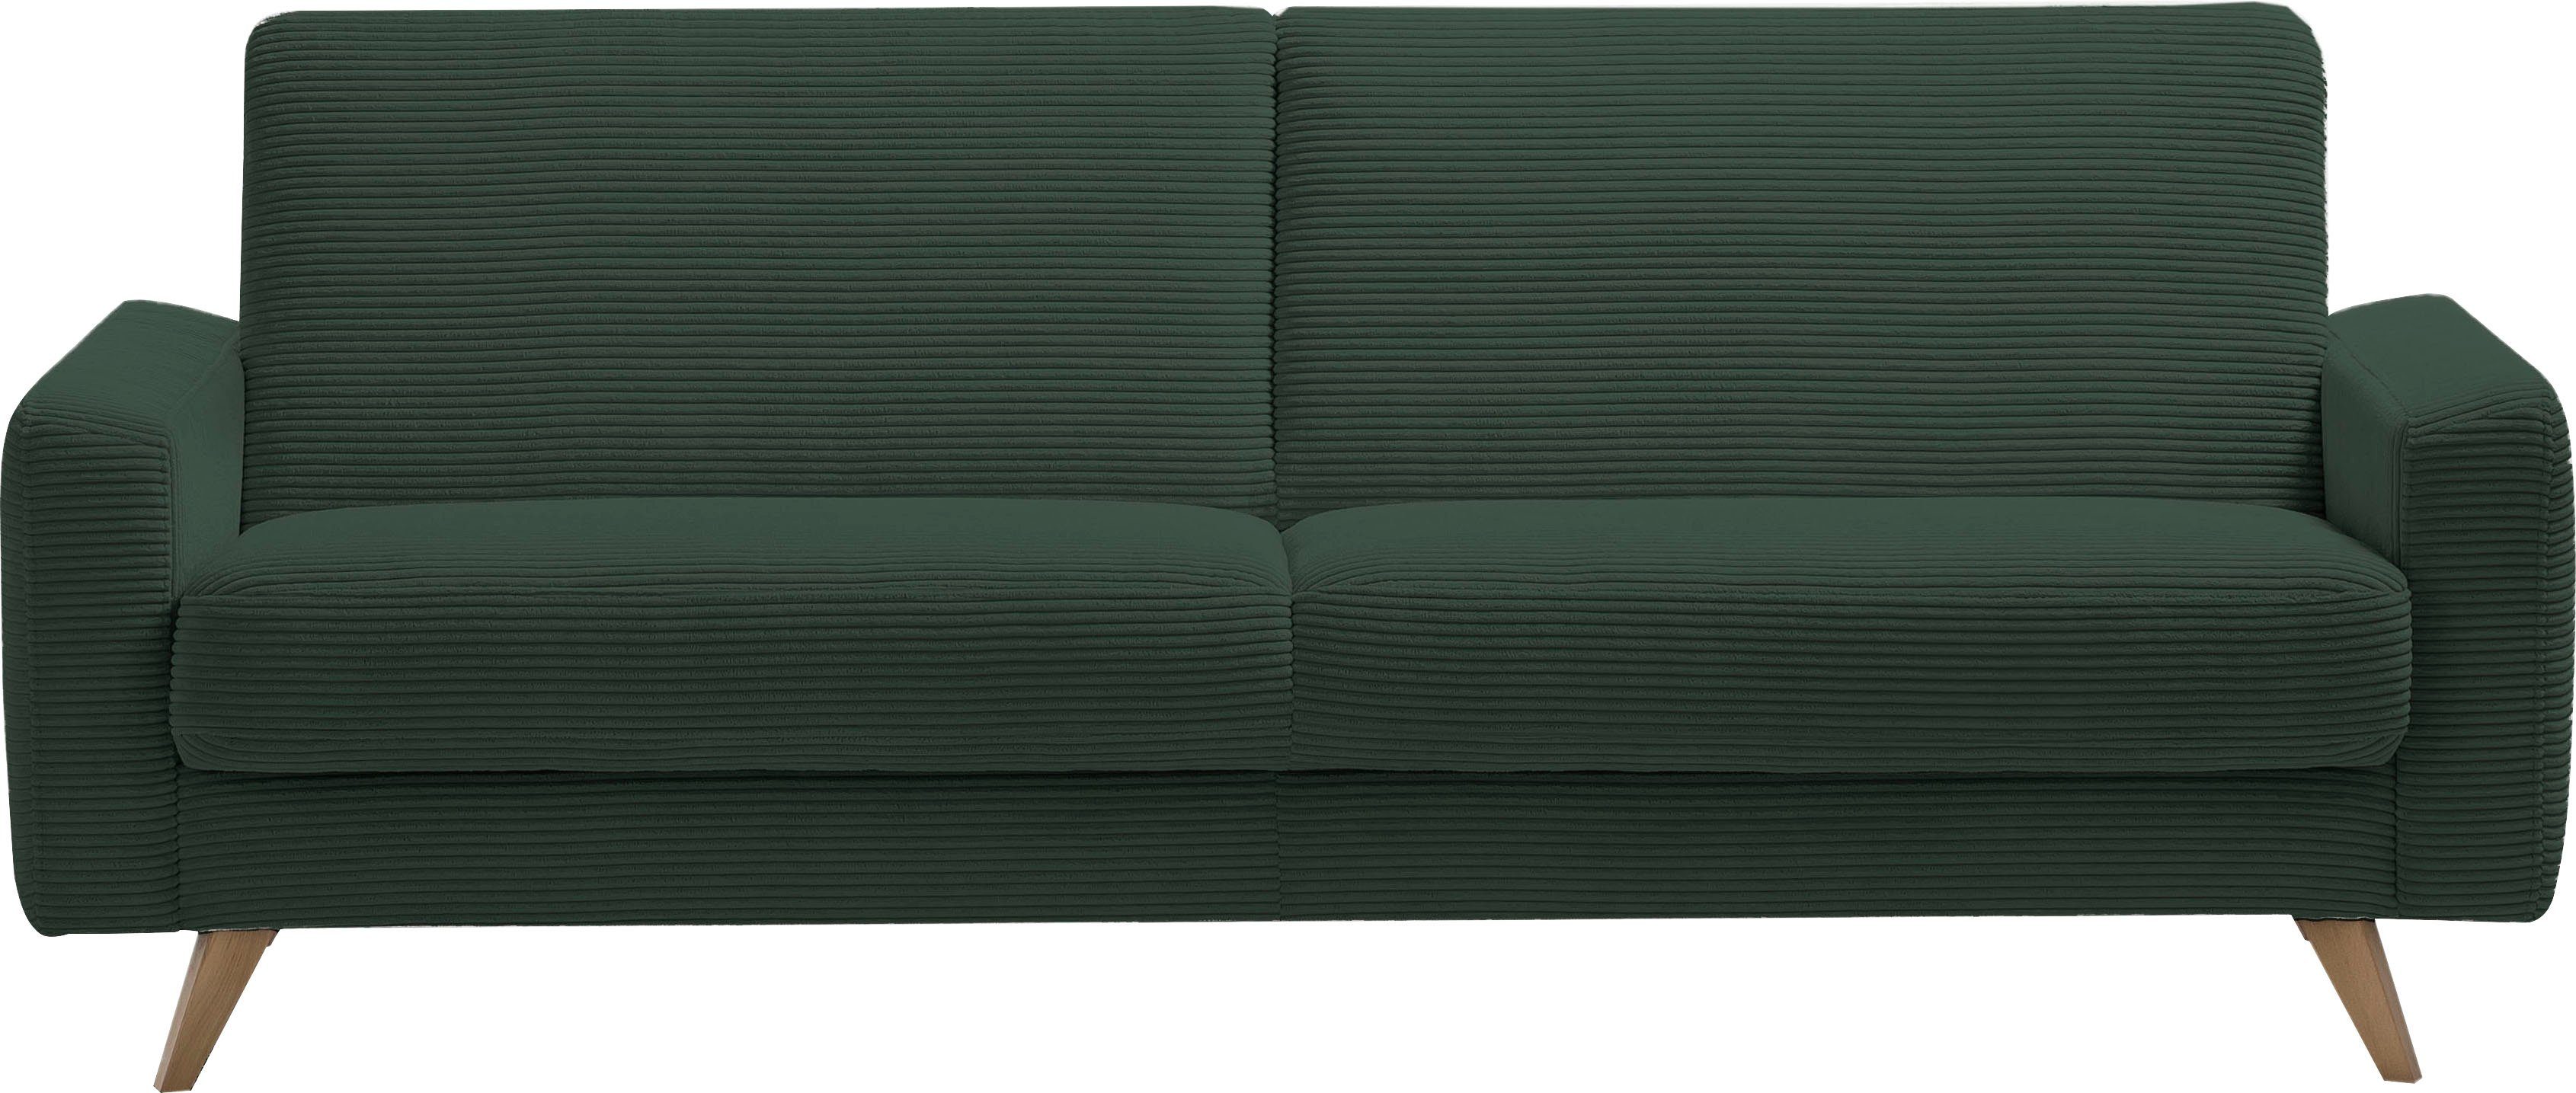 Samso, - und exxpo sofa pine Bettkasten Bettfunktion 3-Sitzer fashion Inklusive